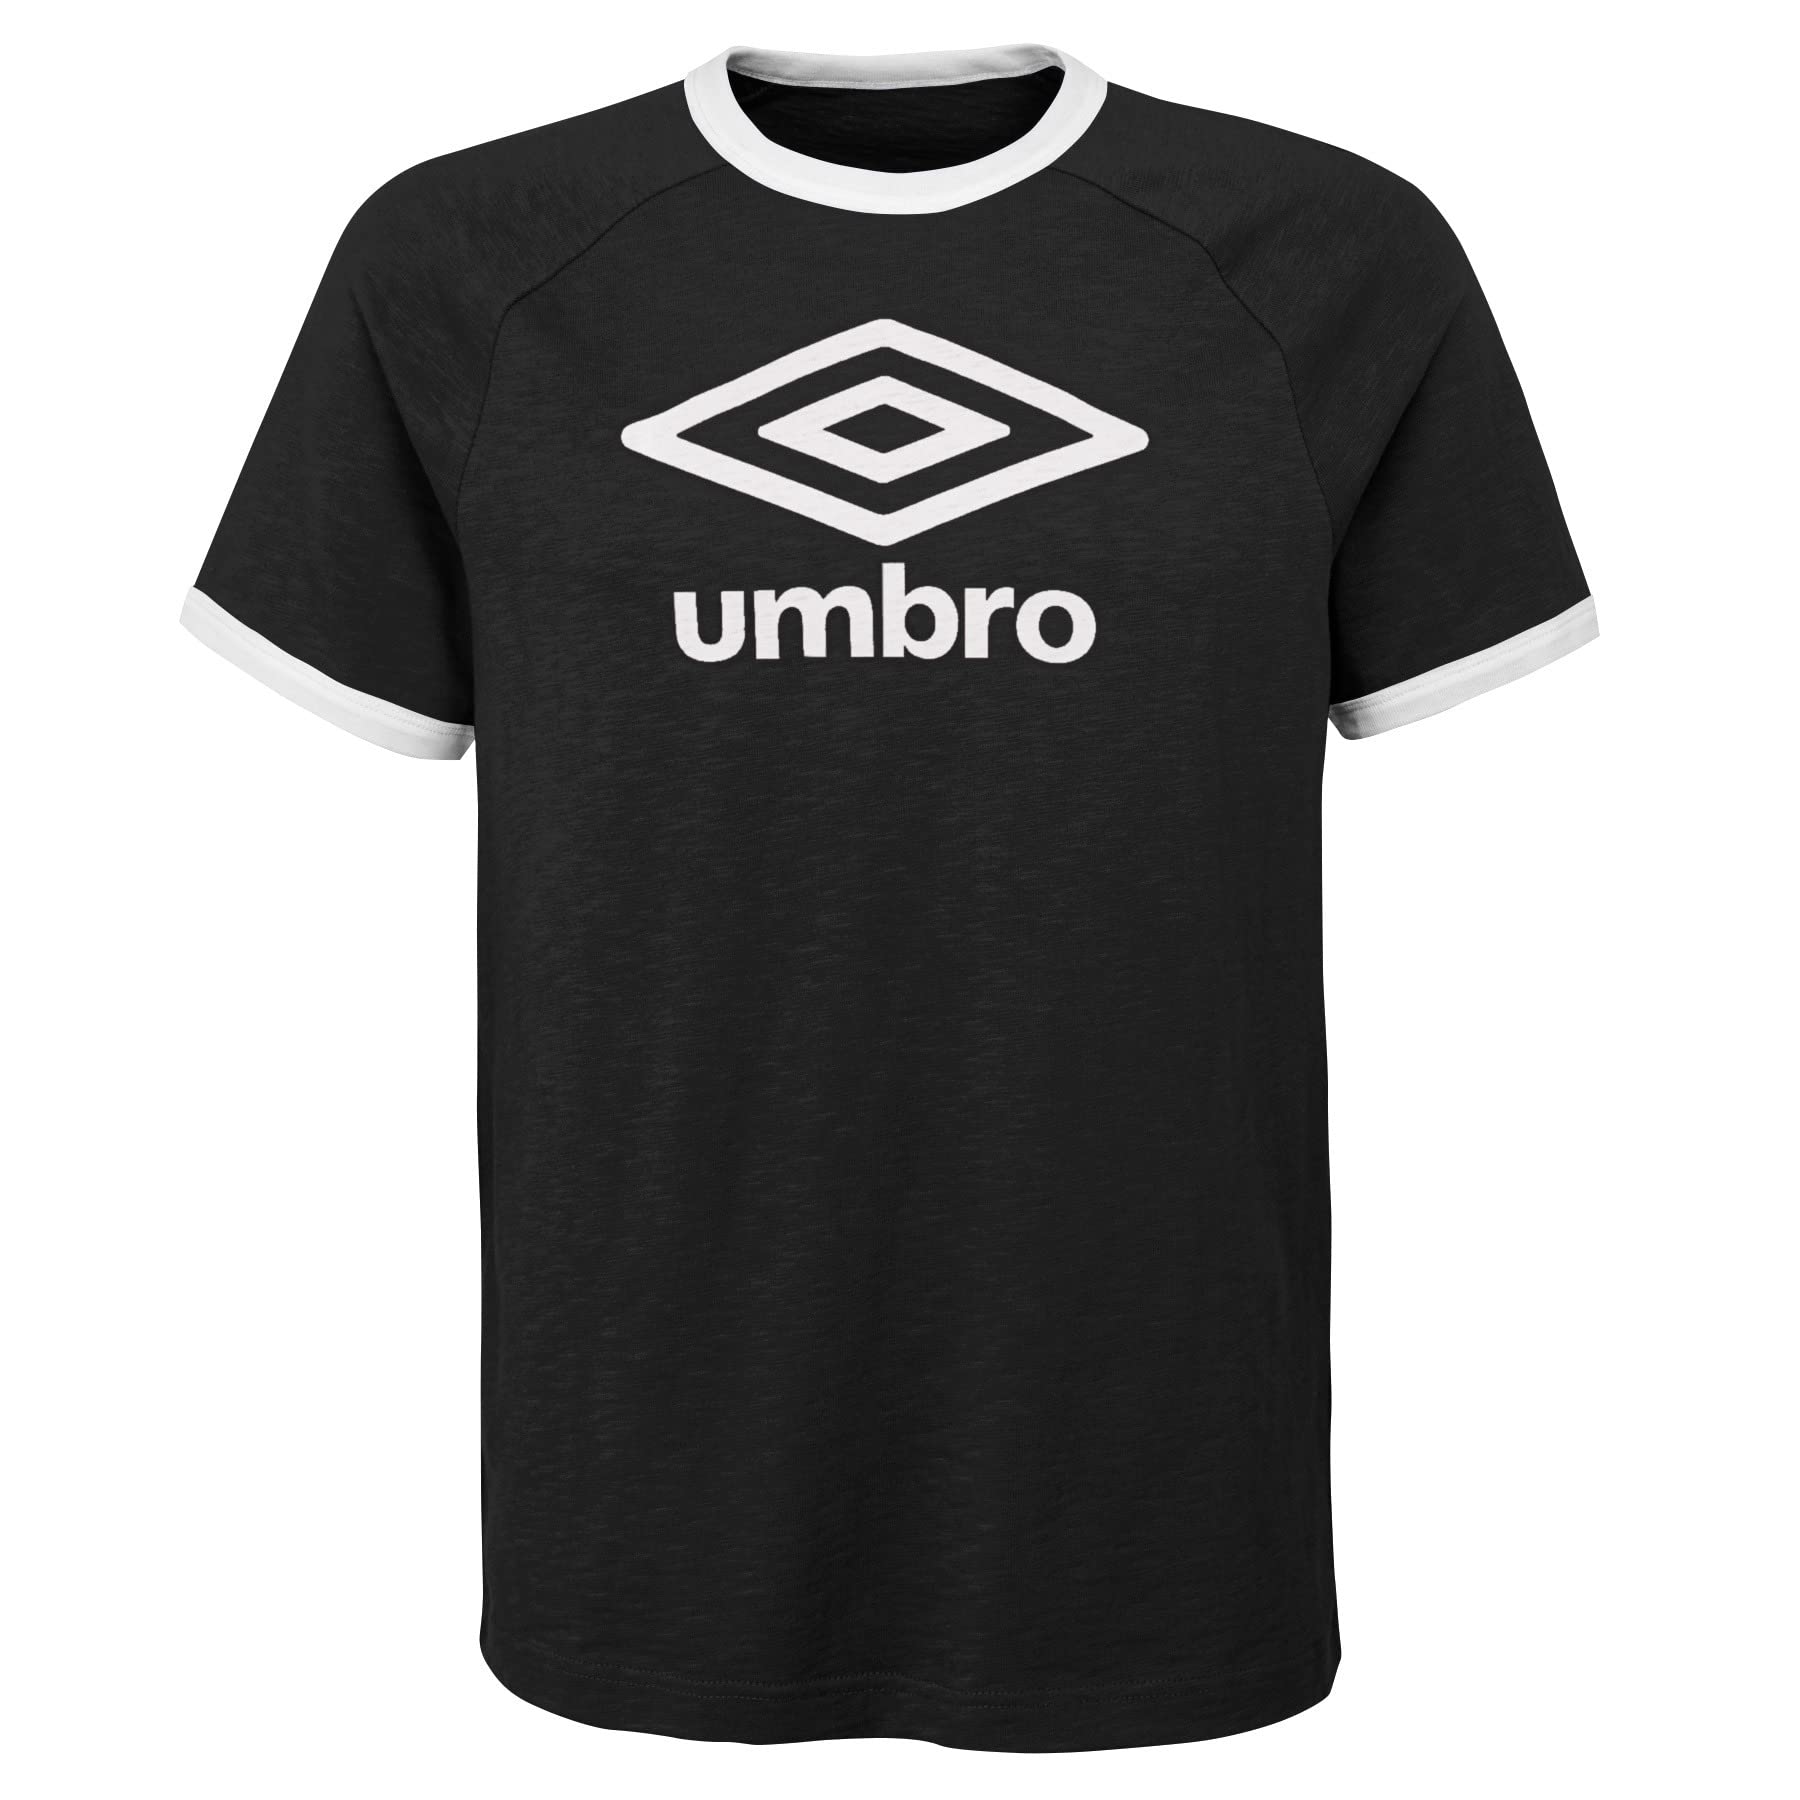 Футболка с логотипом Umbro